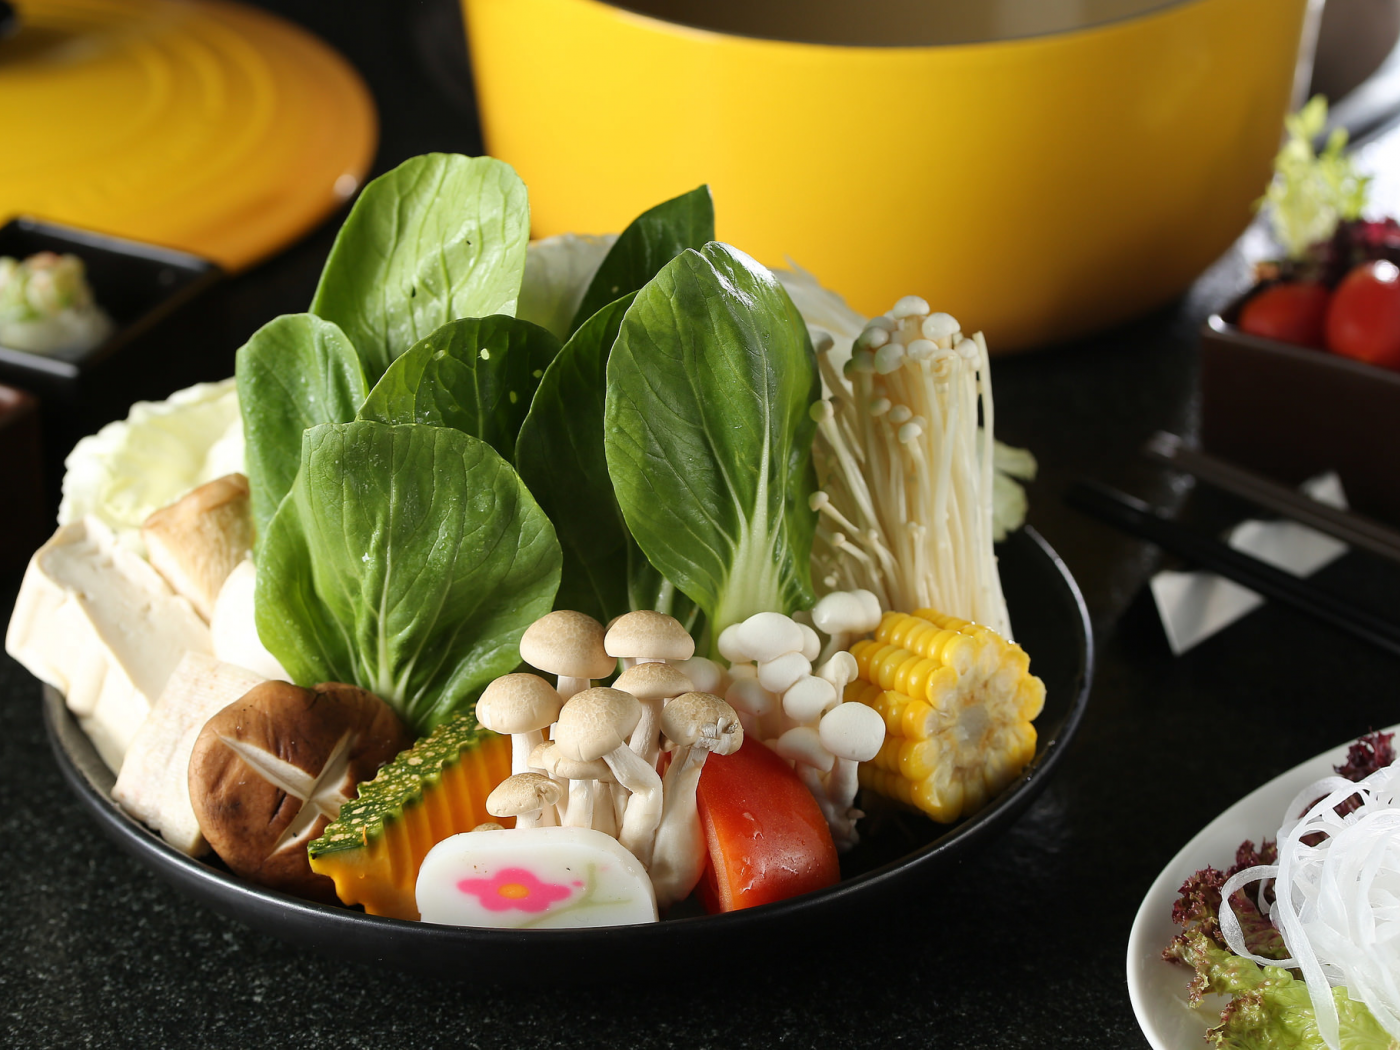 овощи, грибы, тайская кухня